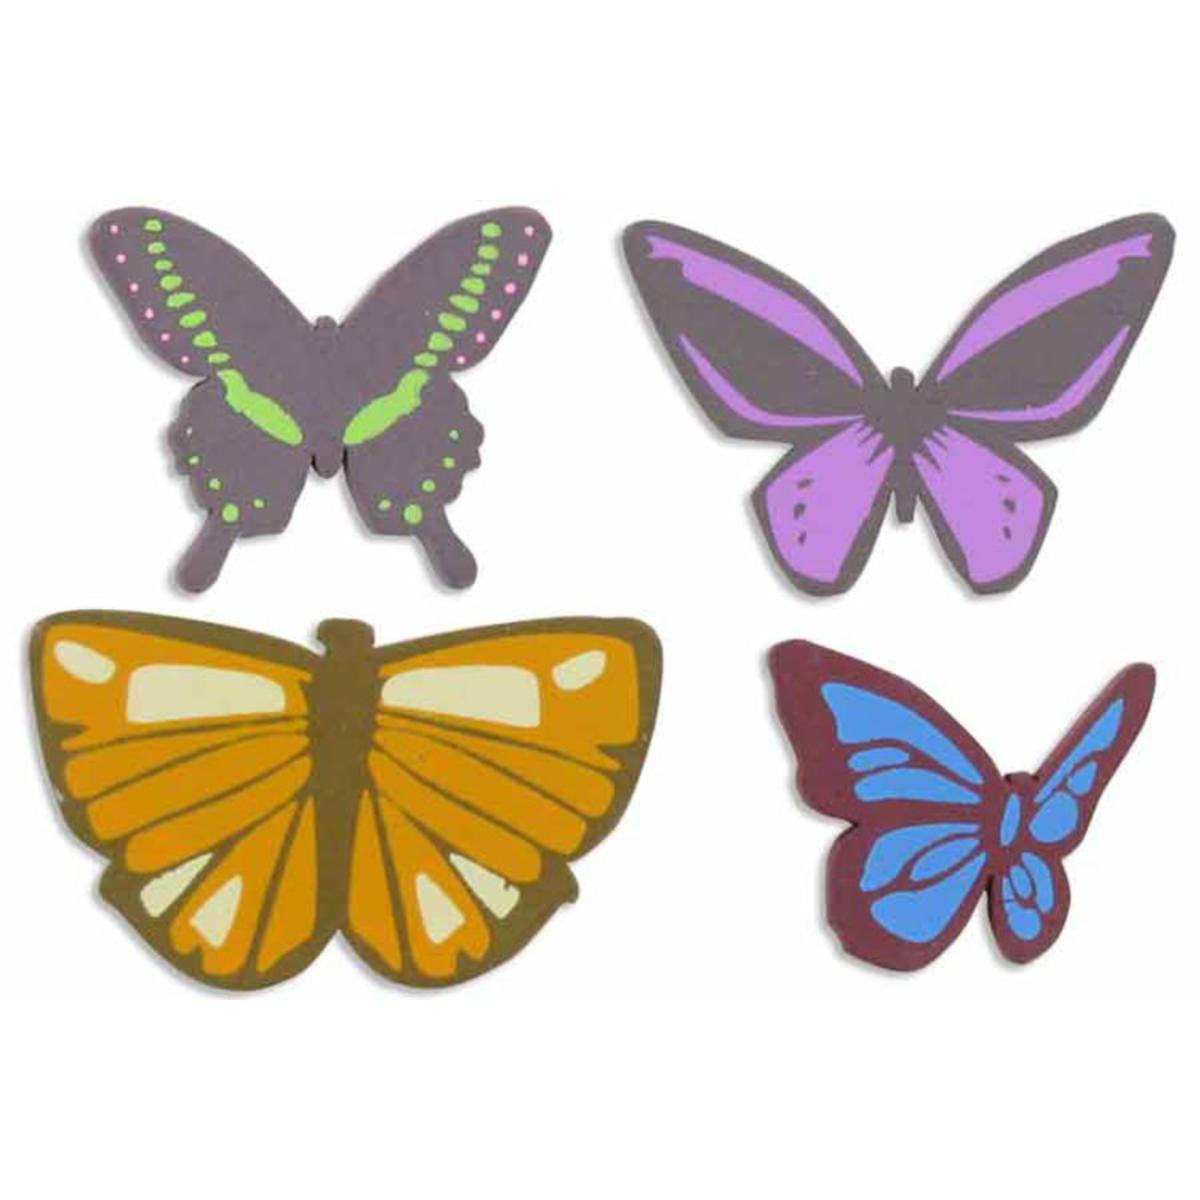 Lot de 8 embellissements Papillons - Bois - 8 x 0,5 x 12 cm - Multicolore